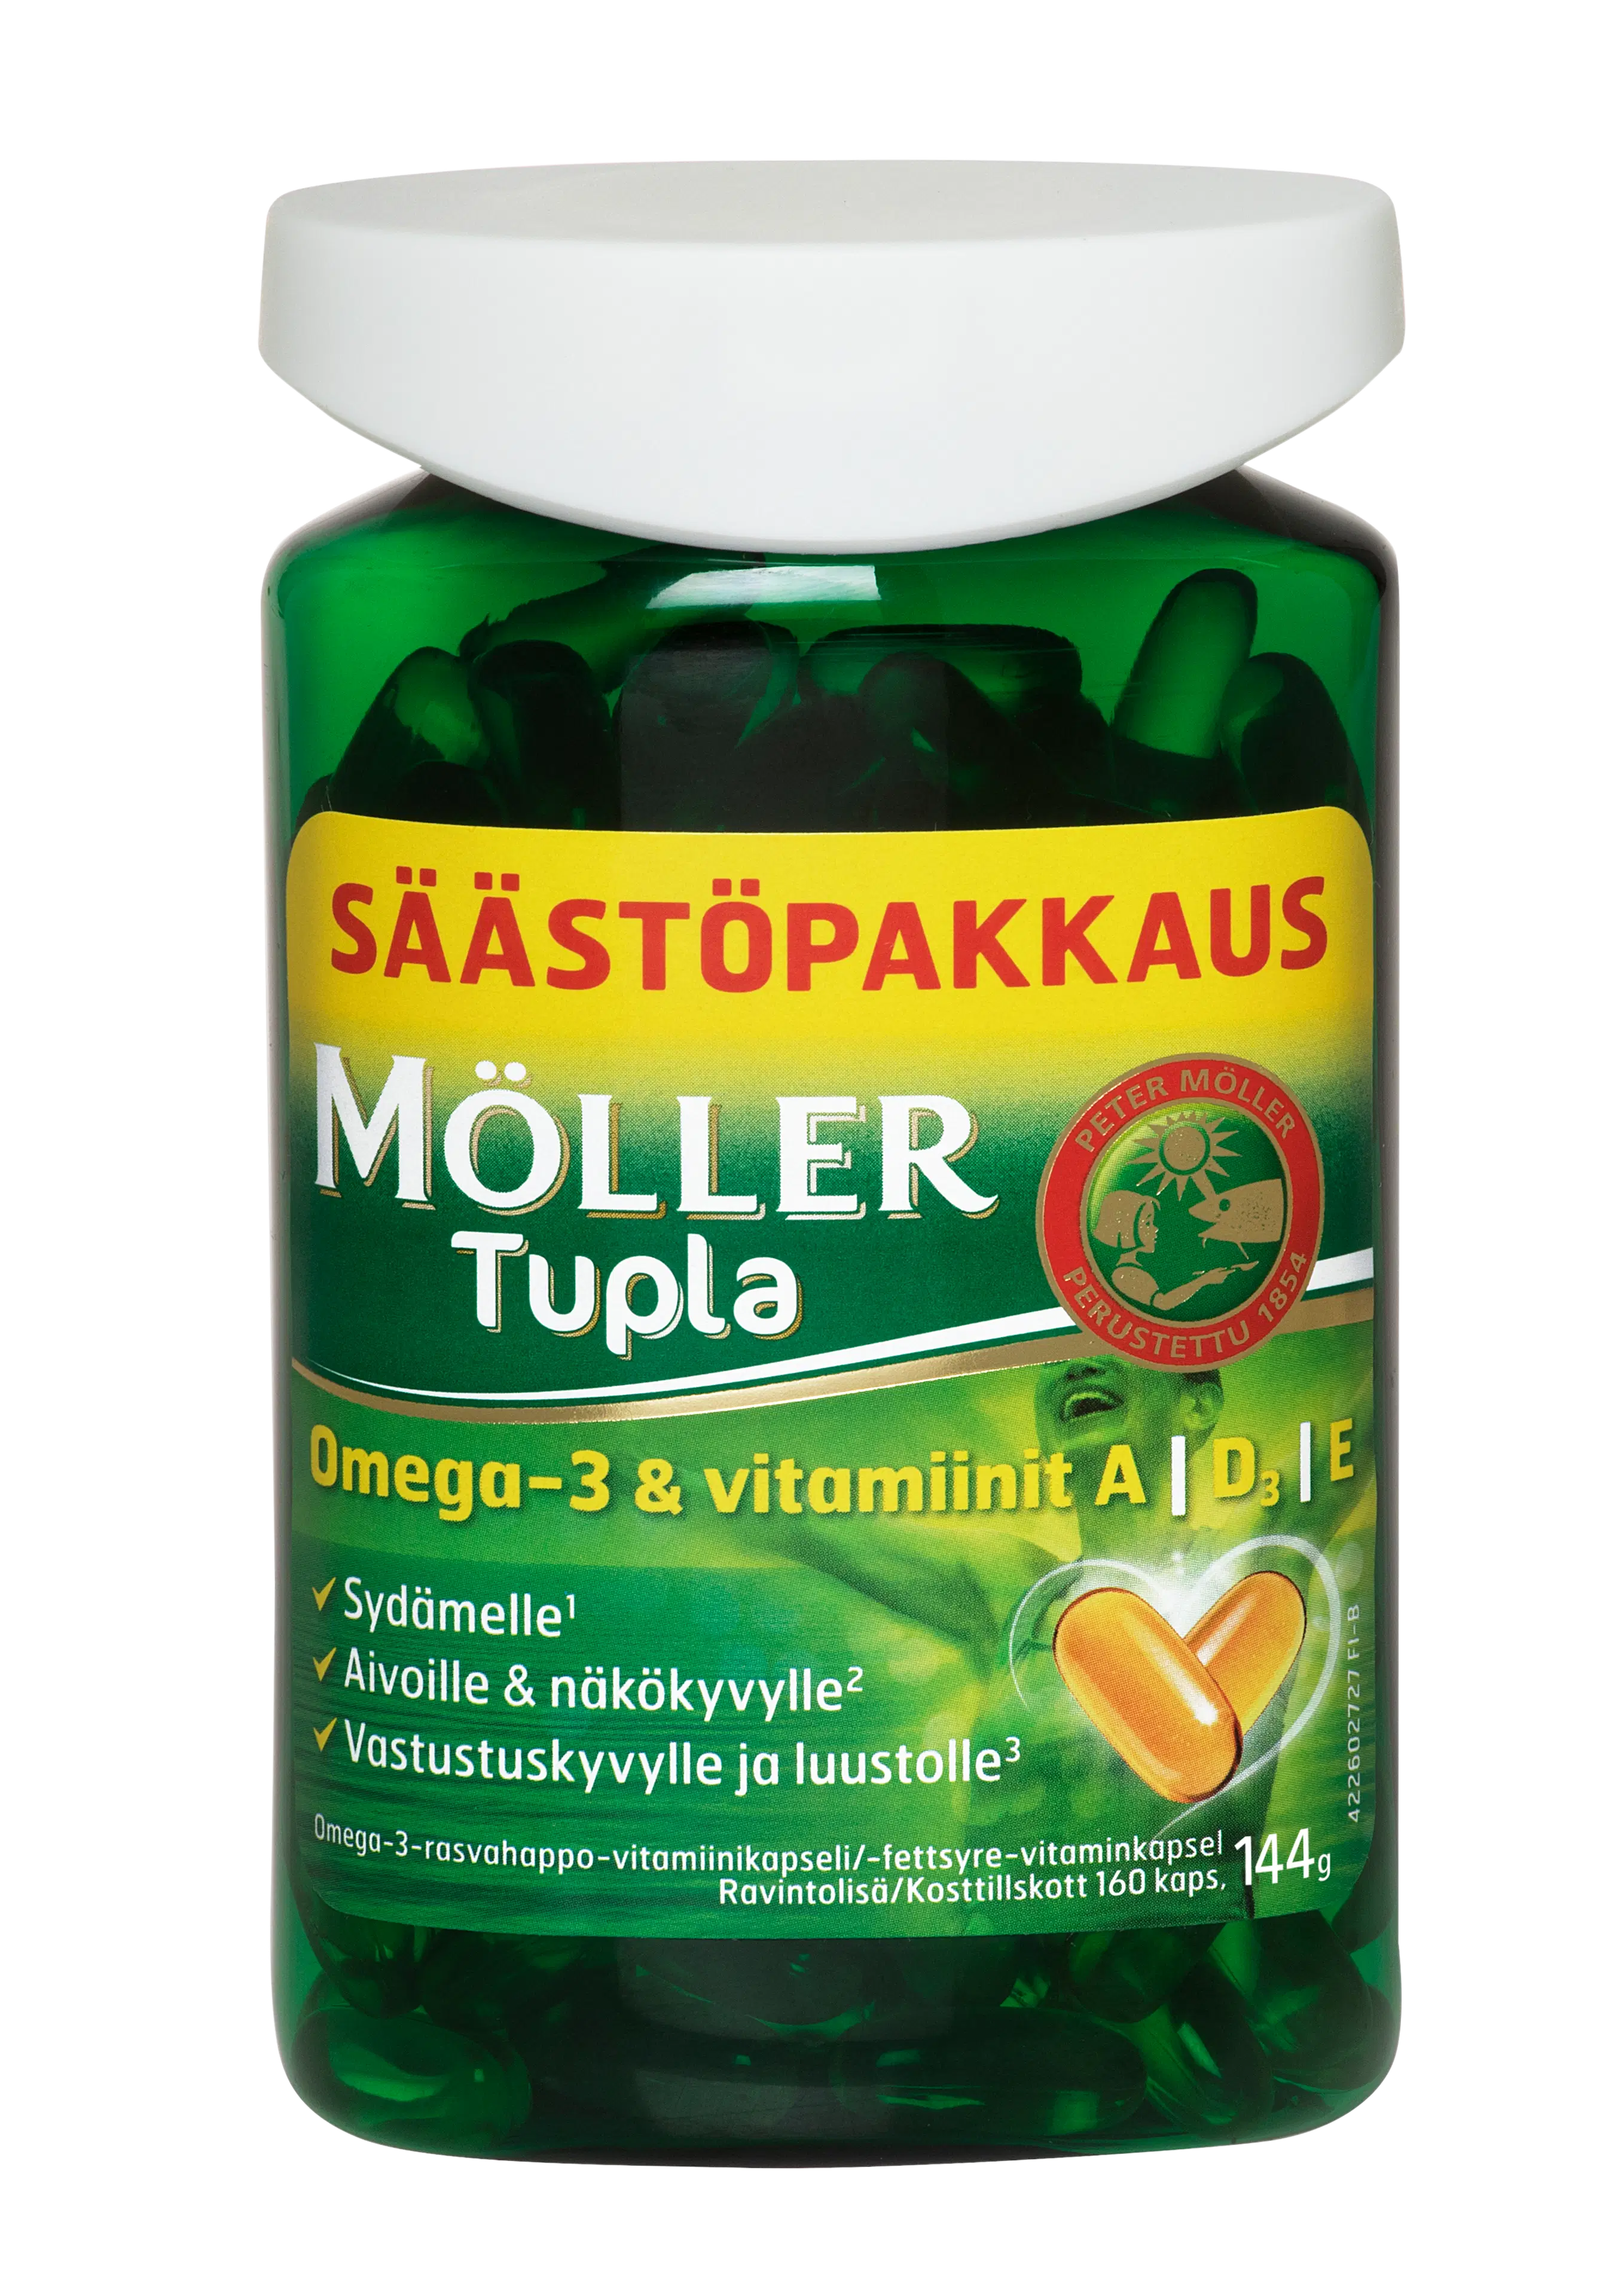 Möller Tupla säästöpakkaus omega-3-rasvahappo-vitamiinikapseli ravintolisä 144g/160kaps